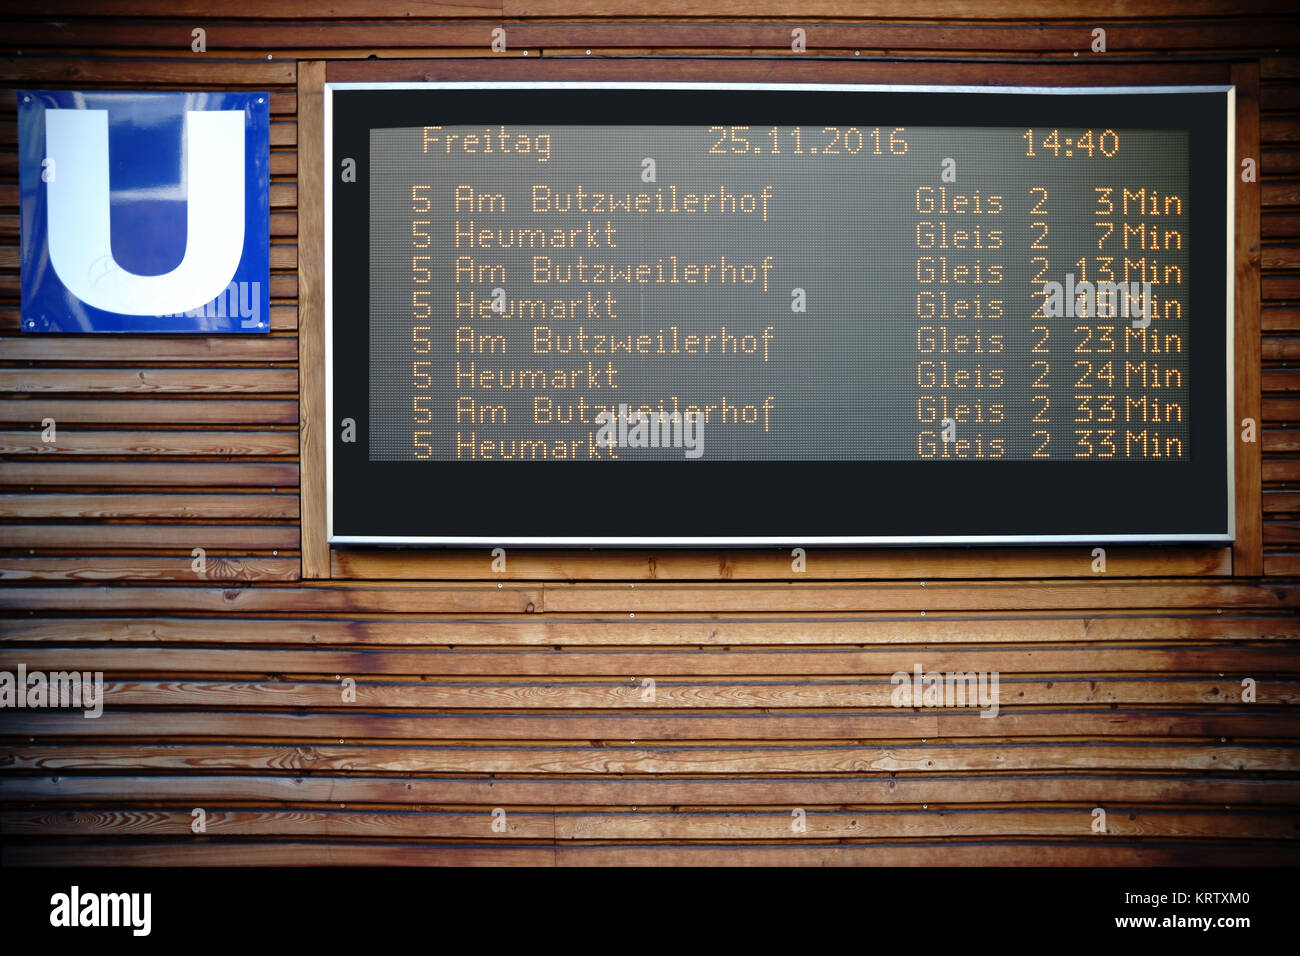 Eine digitale Anzeigetafel mit den Abfahrzeiten für die U-Bahn in Köln. Stock Photo